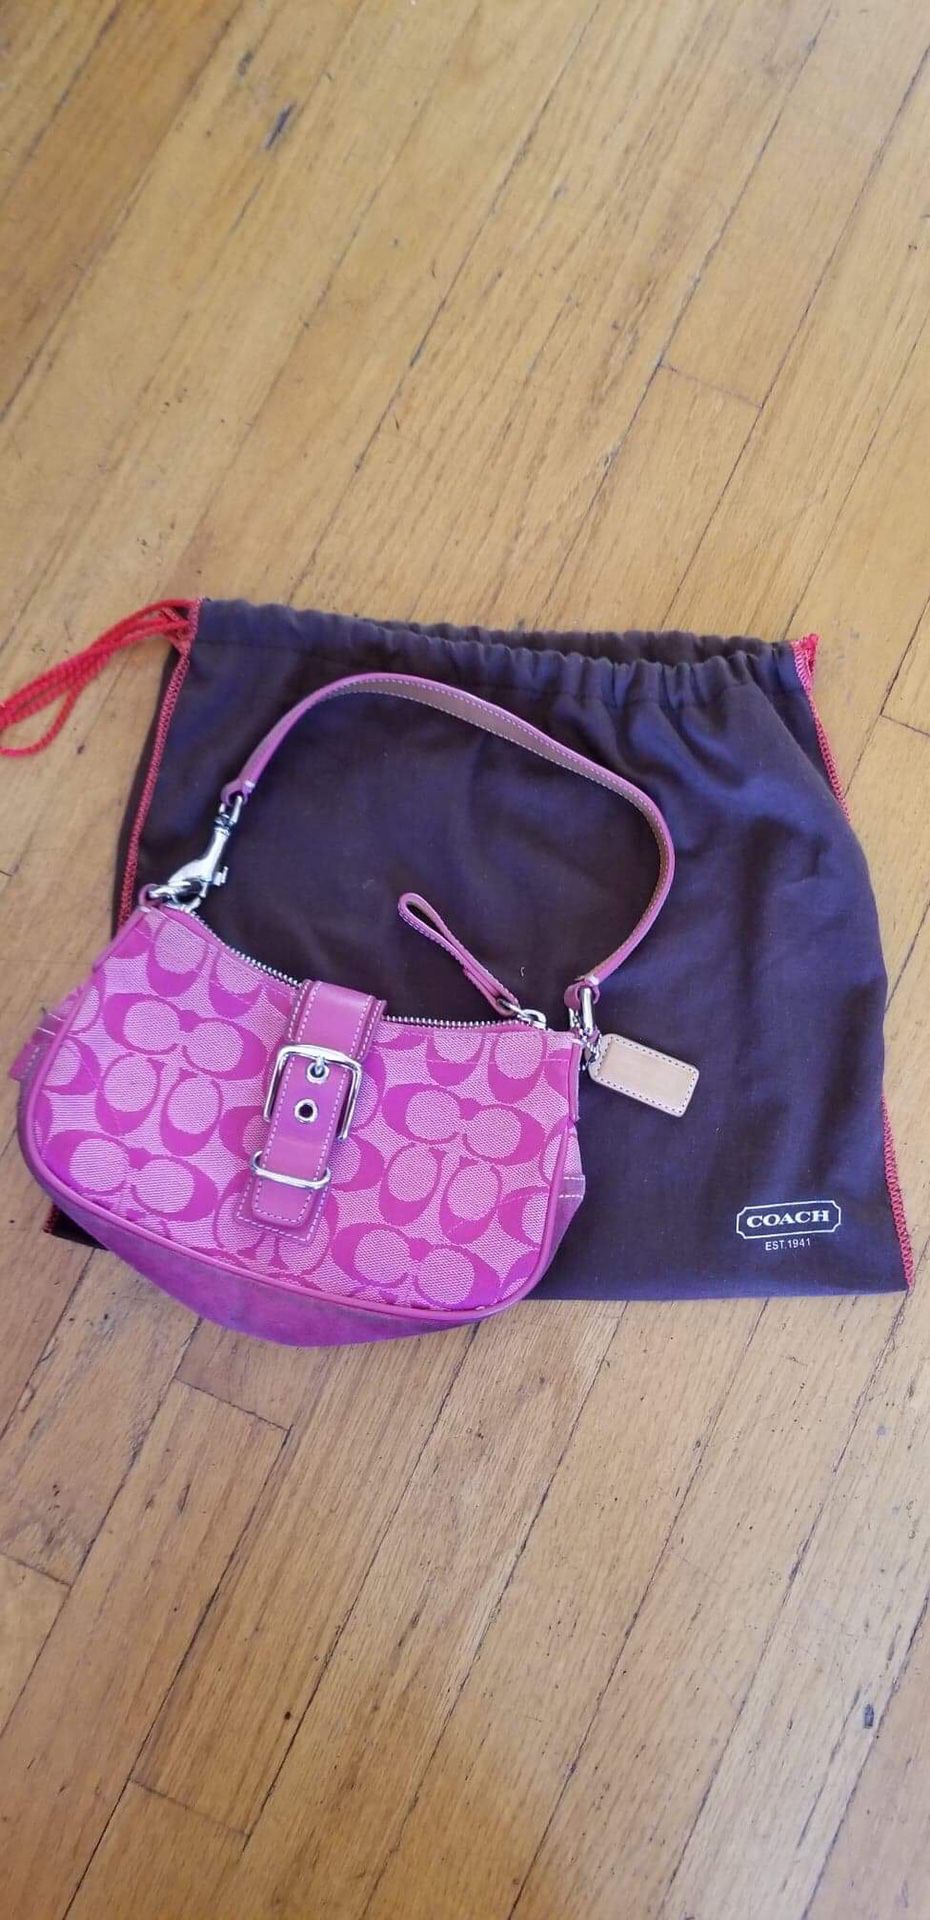 vintage Hot Pink coach tote handbag